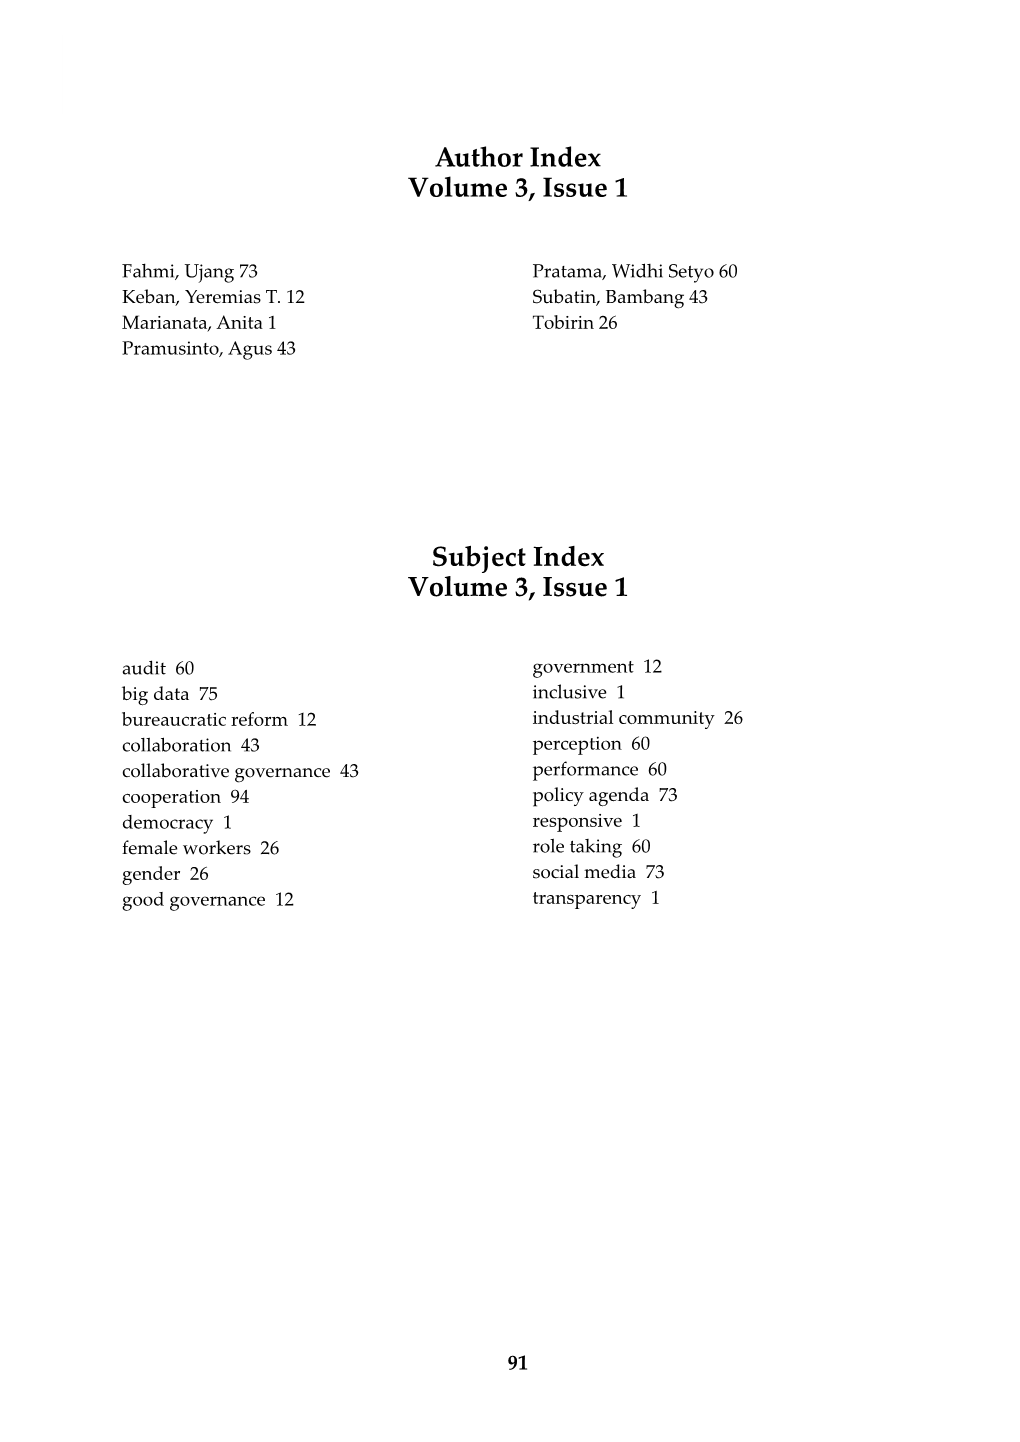 Subject Index Volume 3, Issue 1 Author